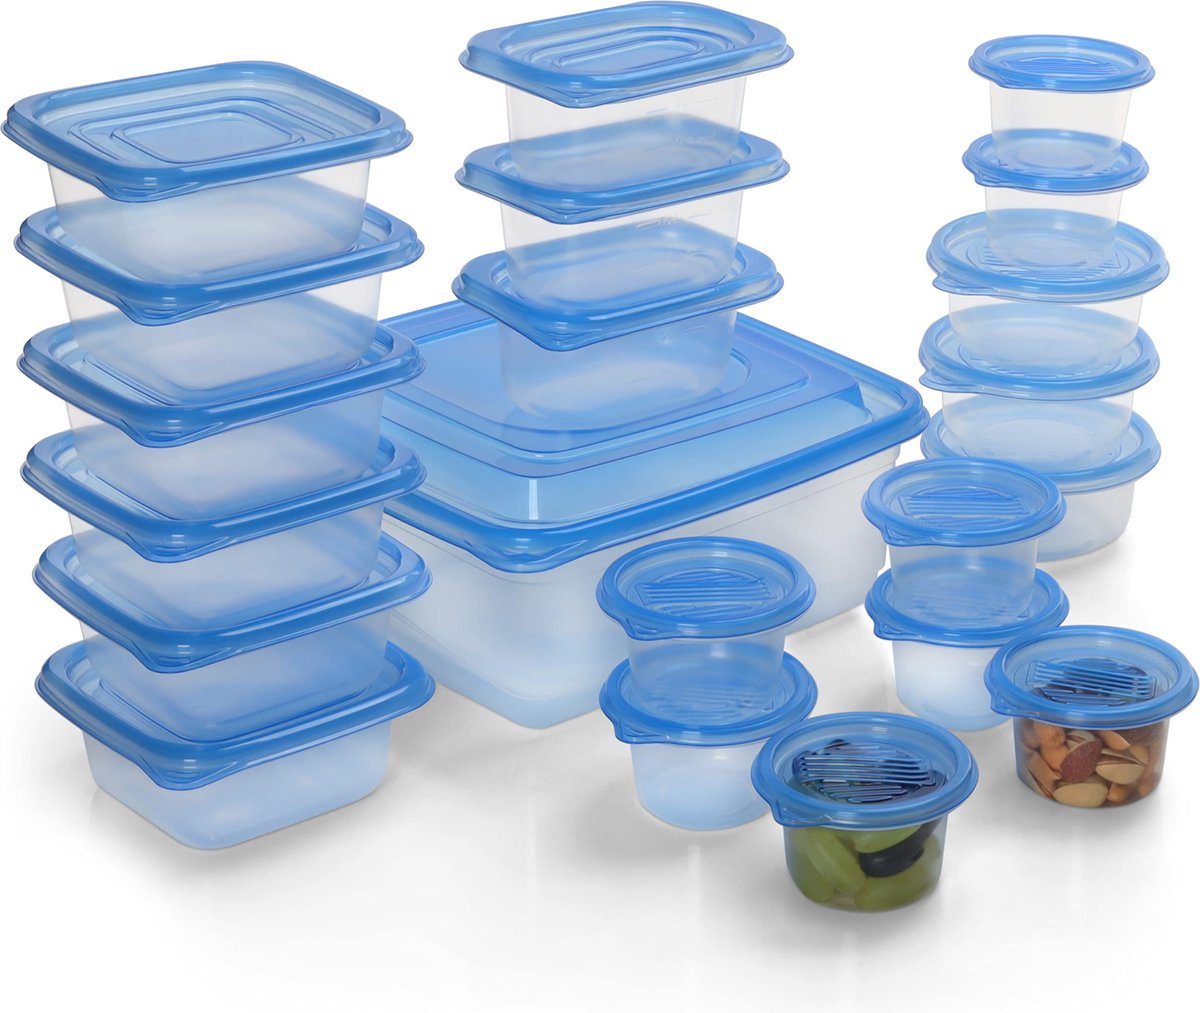 Freshly Contained Plastic Voedsel Containers (21 Stuks) - BPA-vrije Herbruikbare Opslag Dozen Set met Deksels - Luchtdichte Containers voor Keuken, Kelder, Mealprep en Lunches - Magnetron/Diepvries